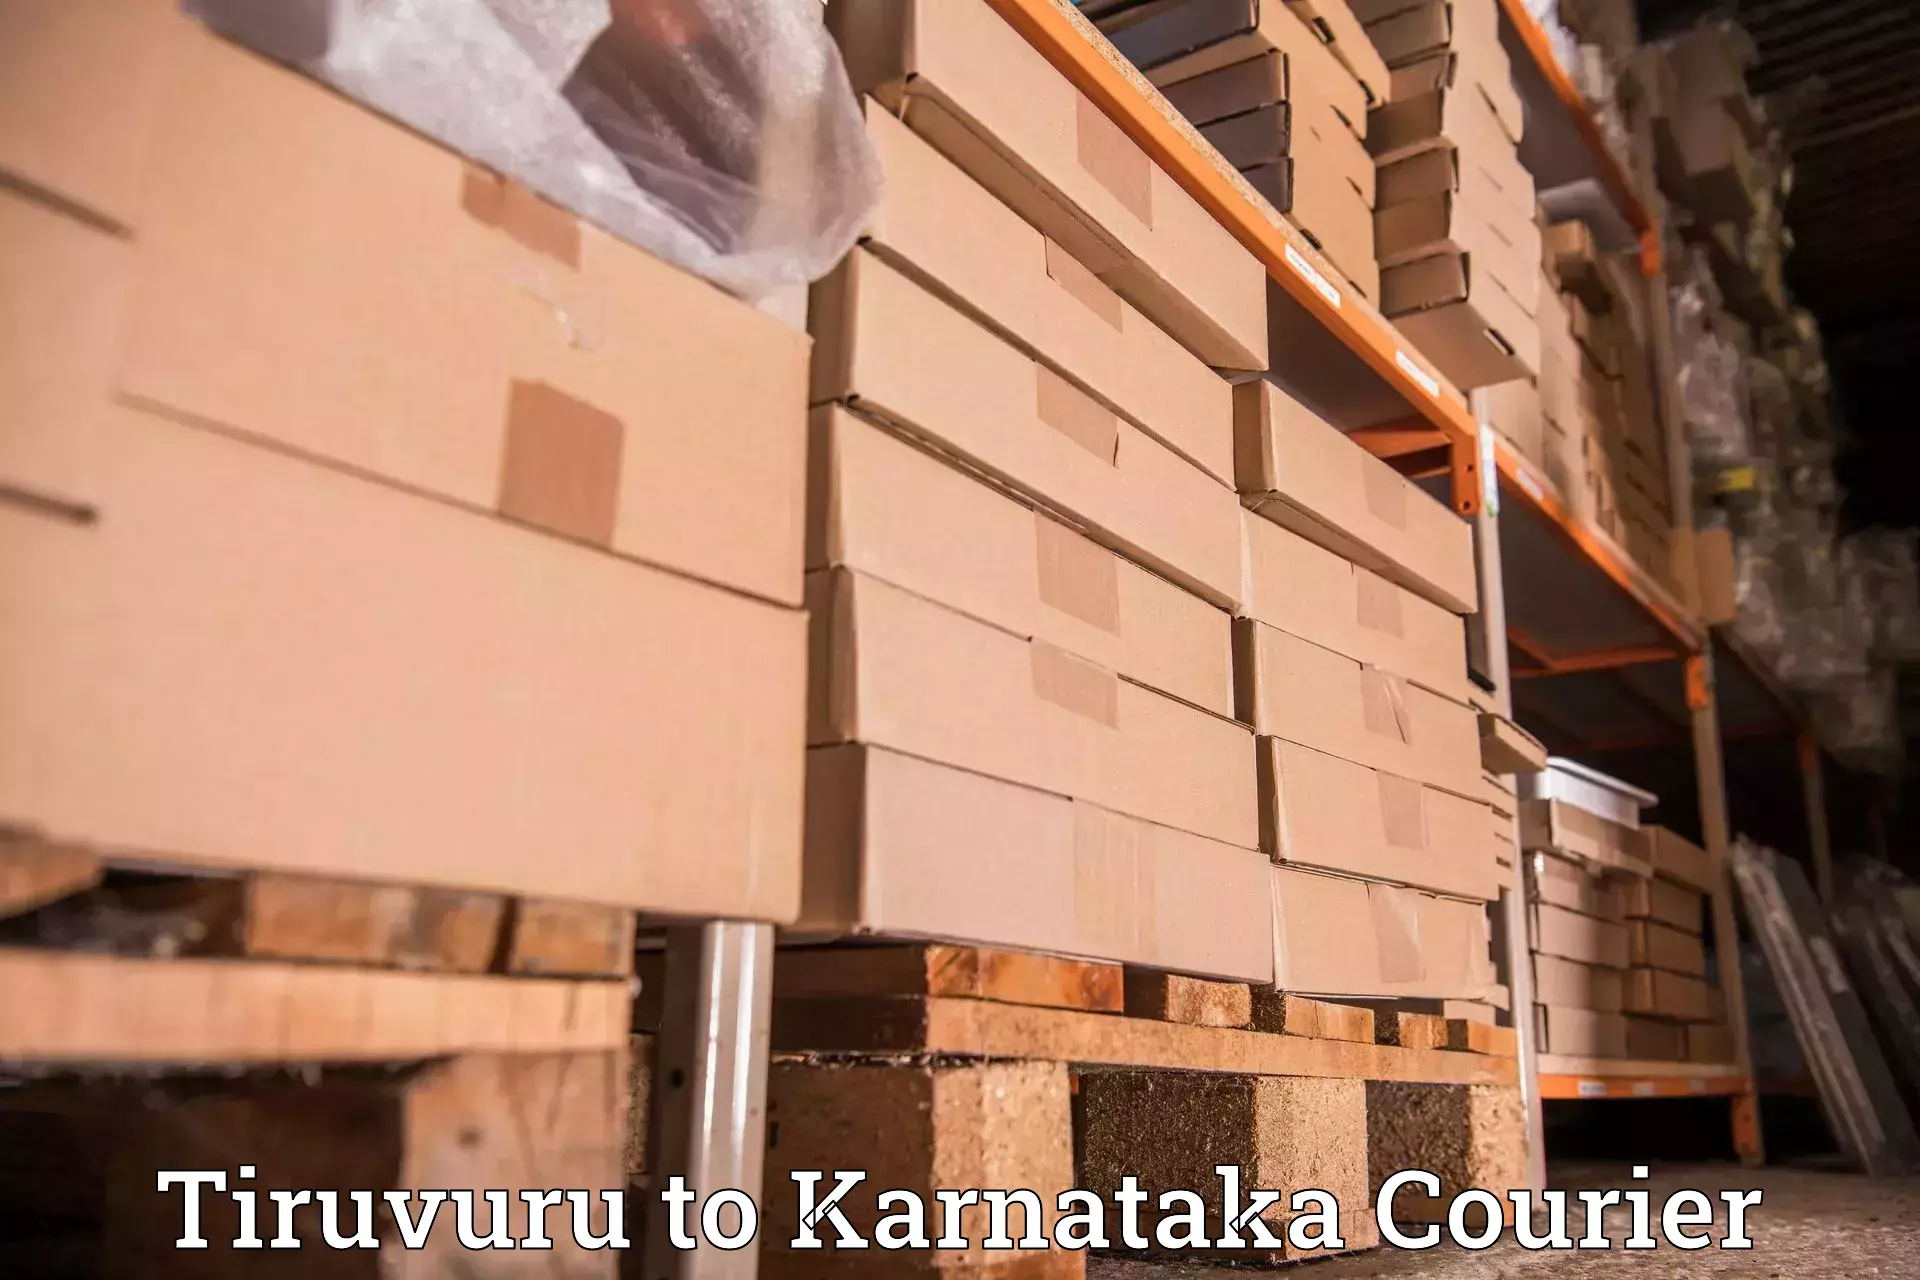 Cargo courier service Tiruvuru to Karnataka